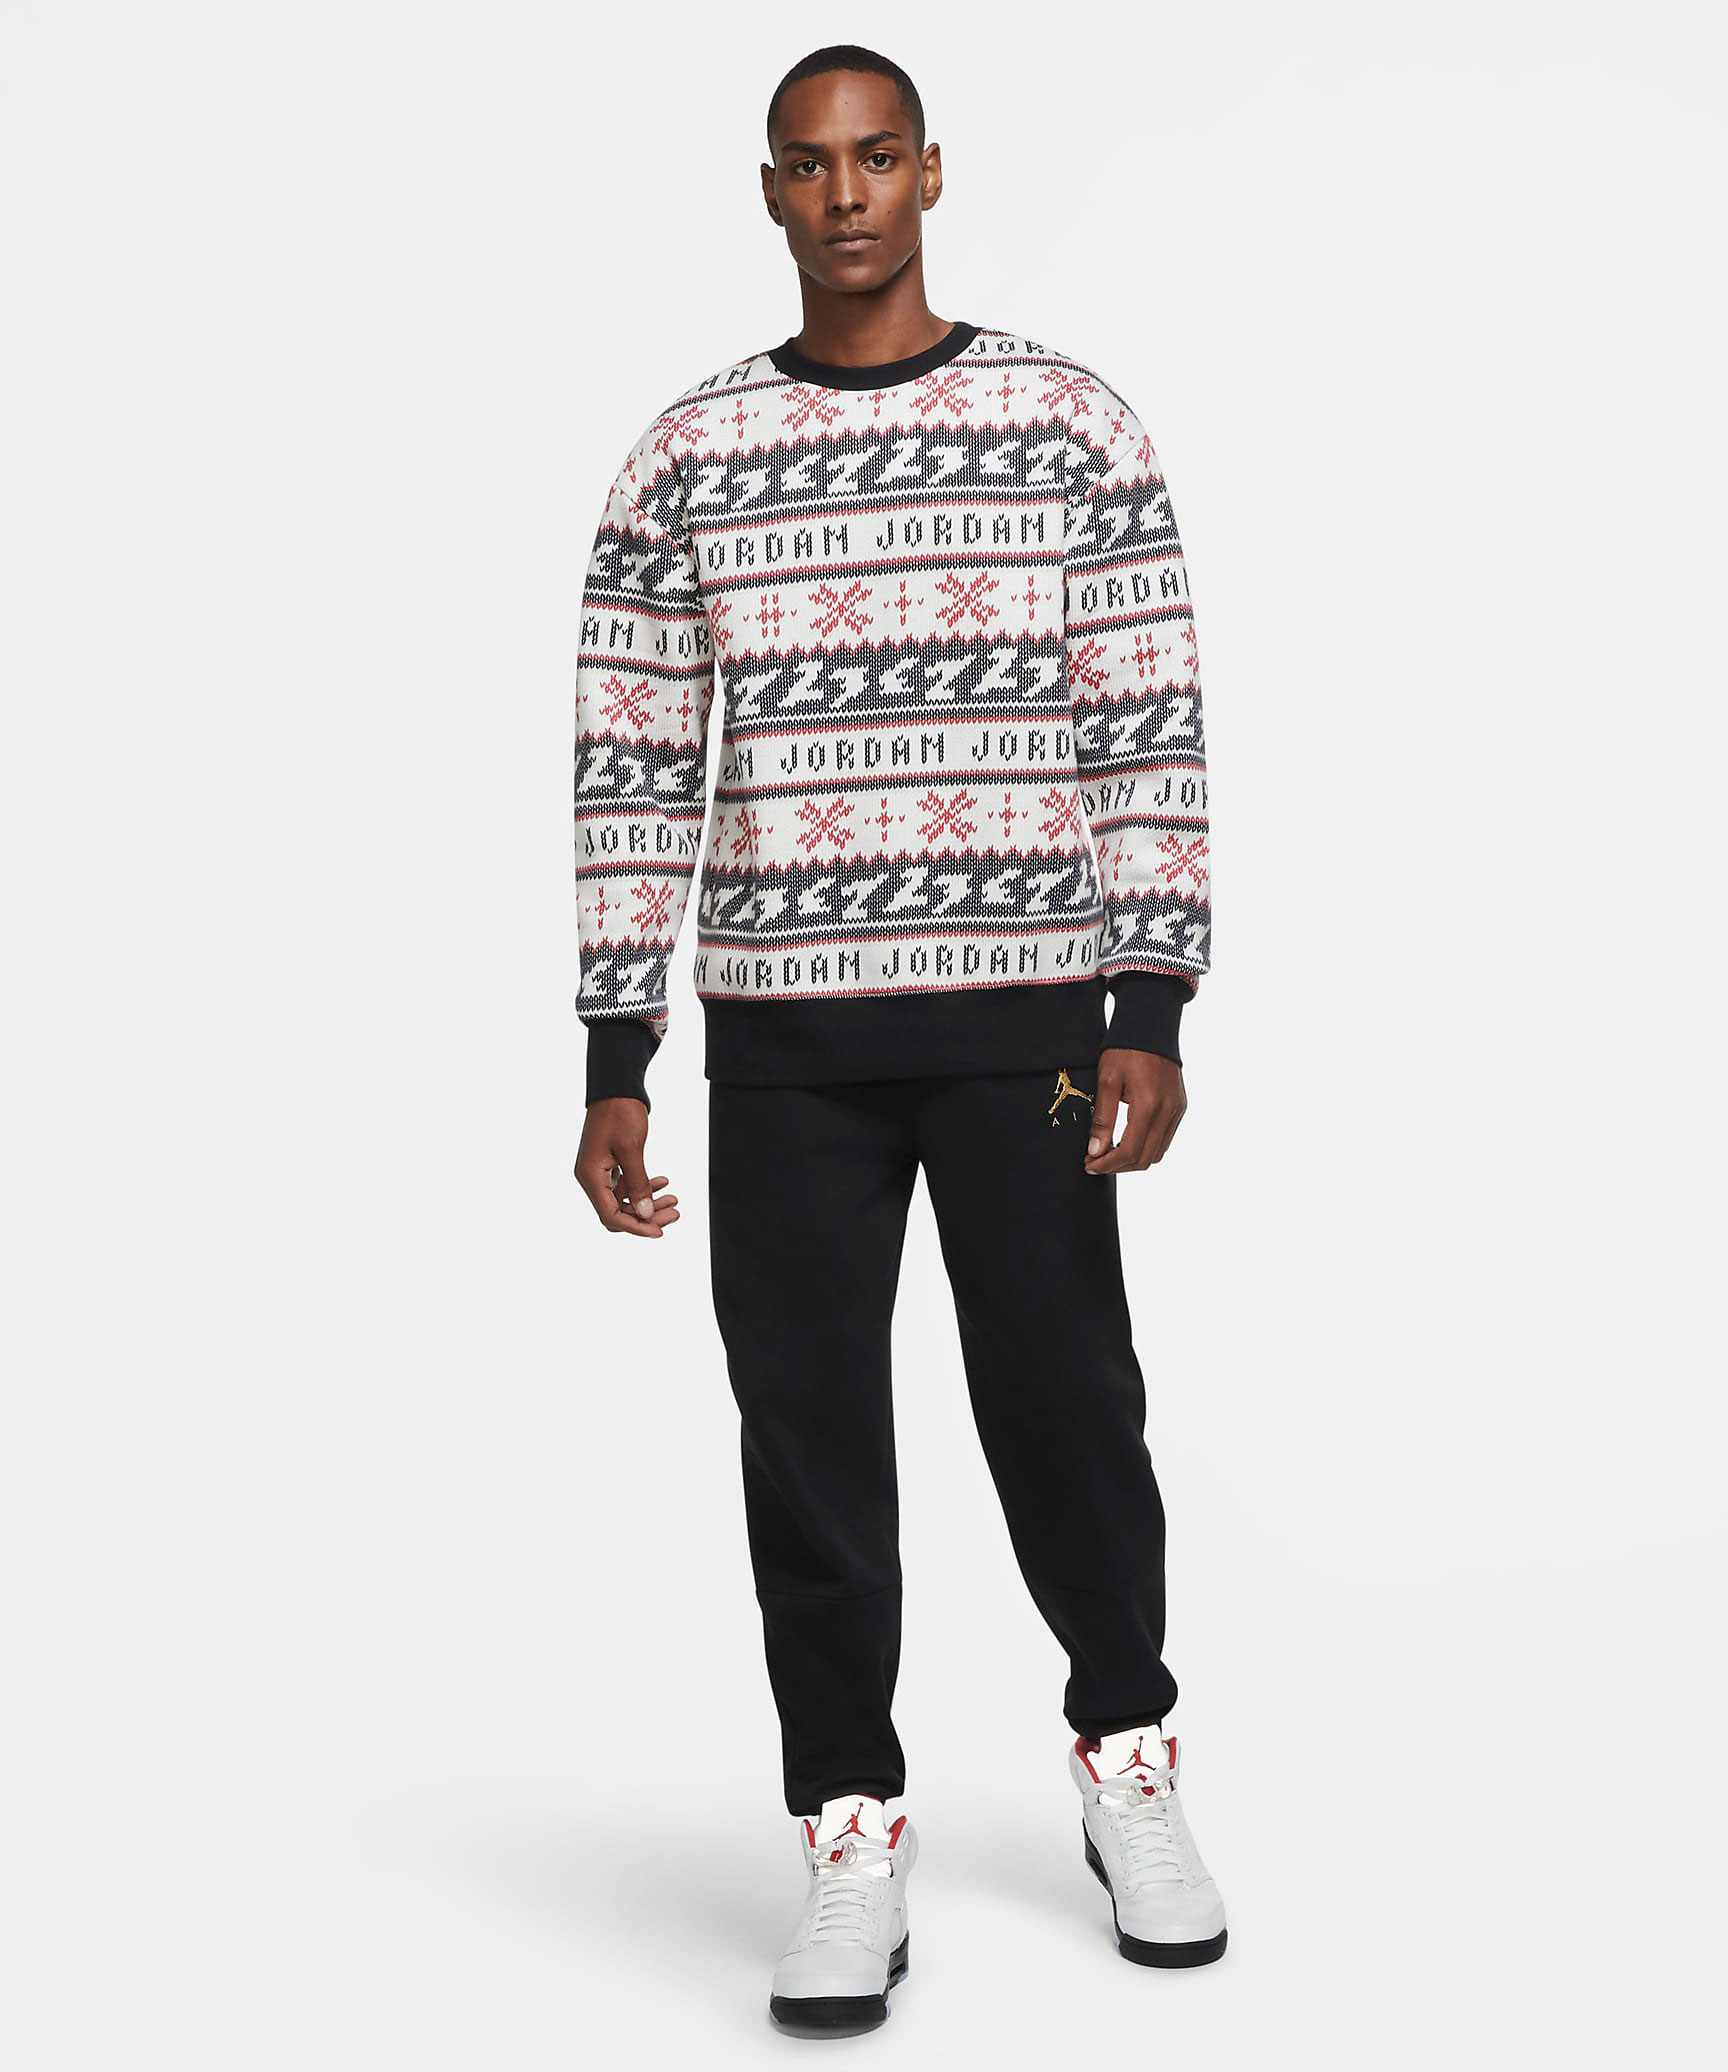 jordan-ugly-holiday-sweater-sweatshirt-4